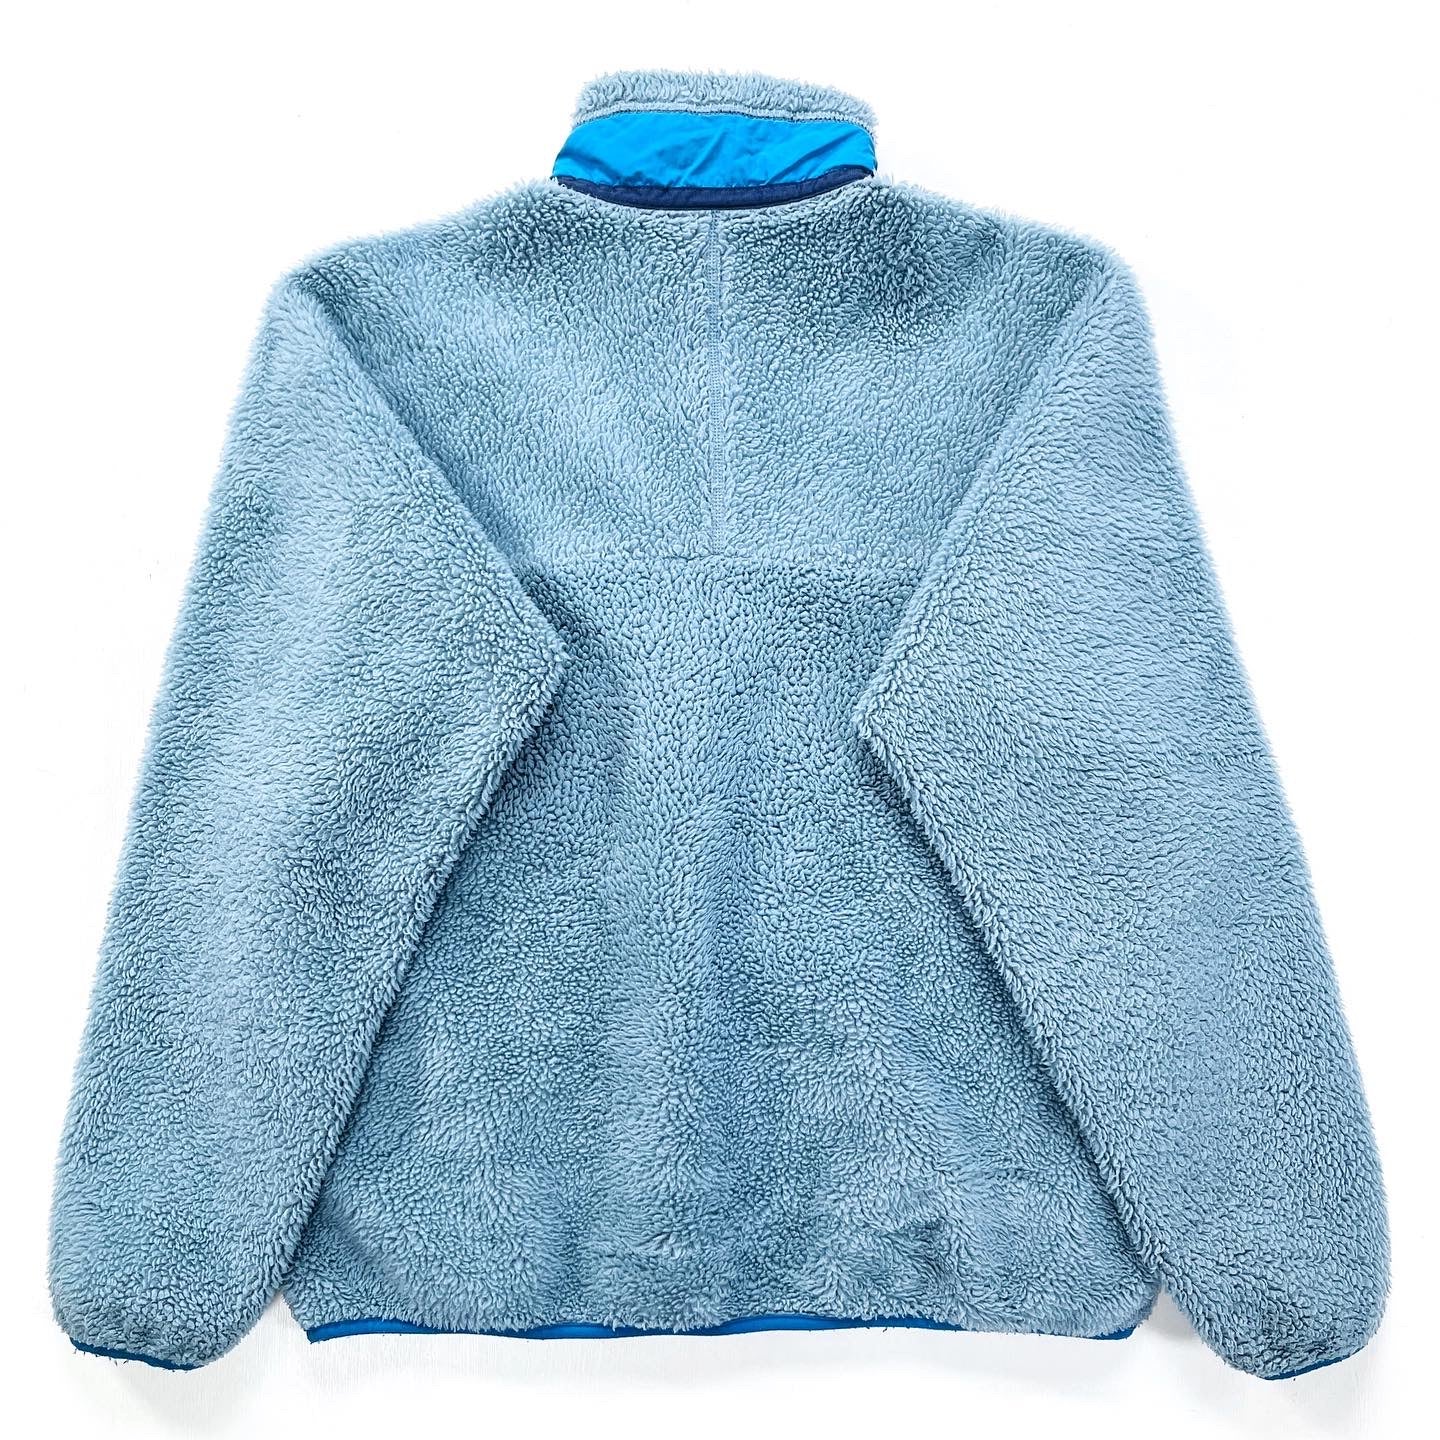 2012 Patagonia Mens Retro-X Fleece Jacket, Glacier Blue (L)